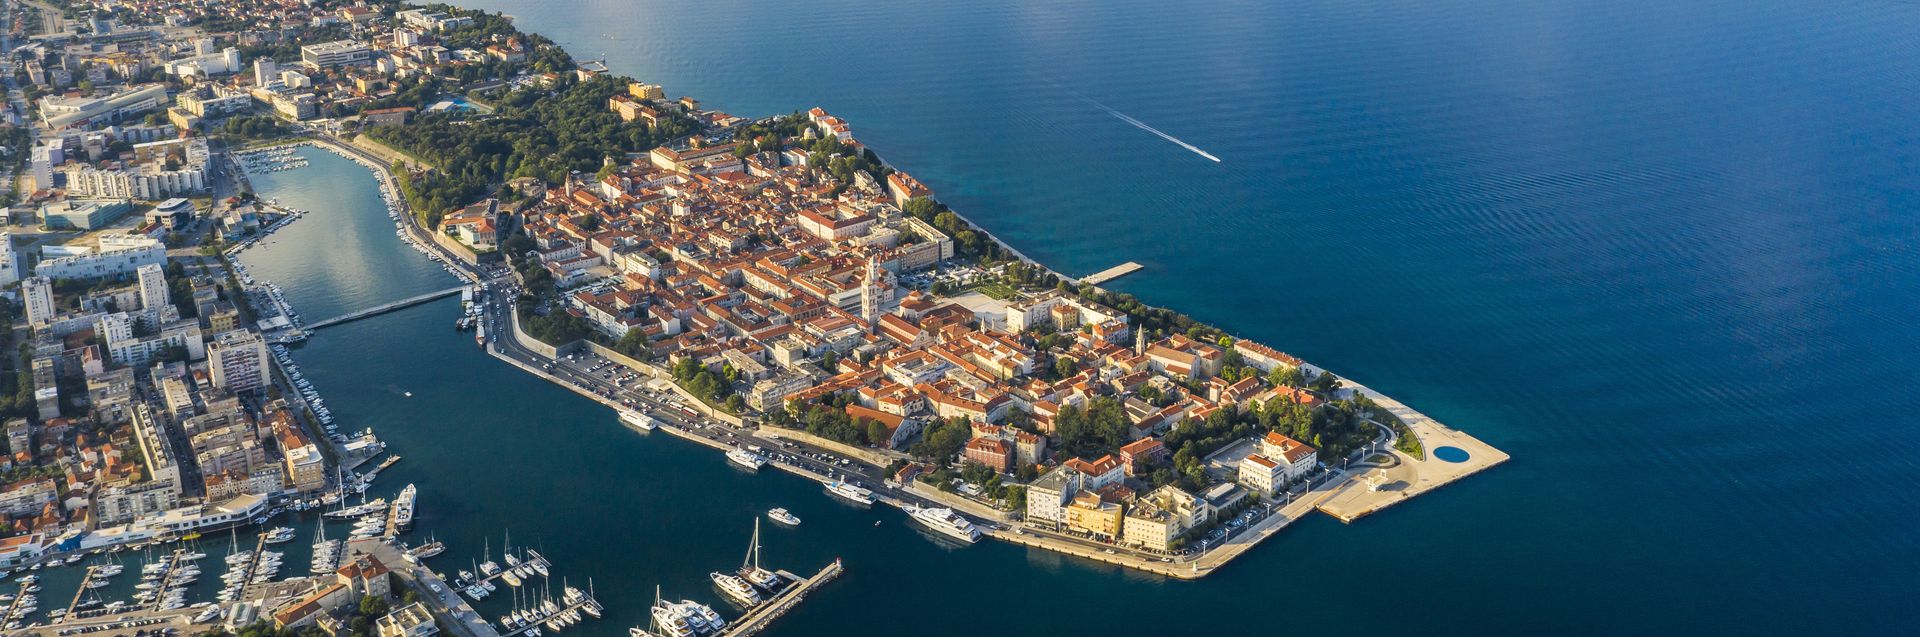 Zadar, malownicze miasteczko położone wzdłuż oszałamiającego dalmatyńskiego wybrzeża Chorwacji